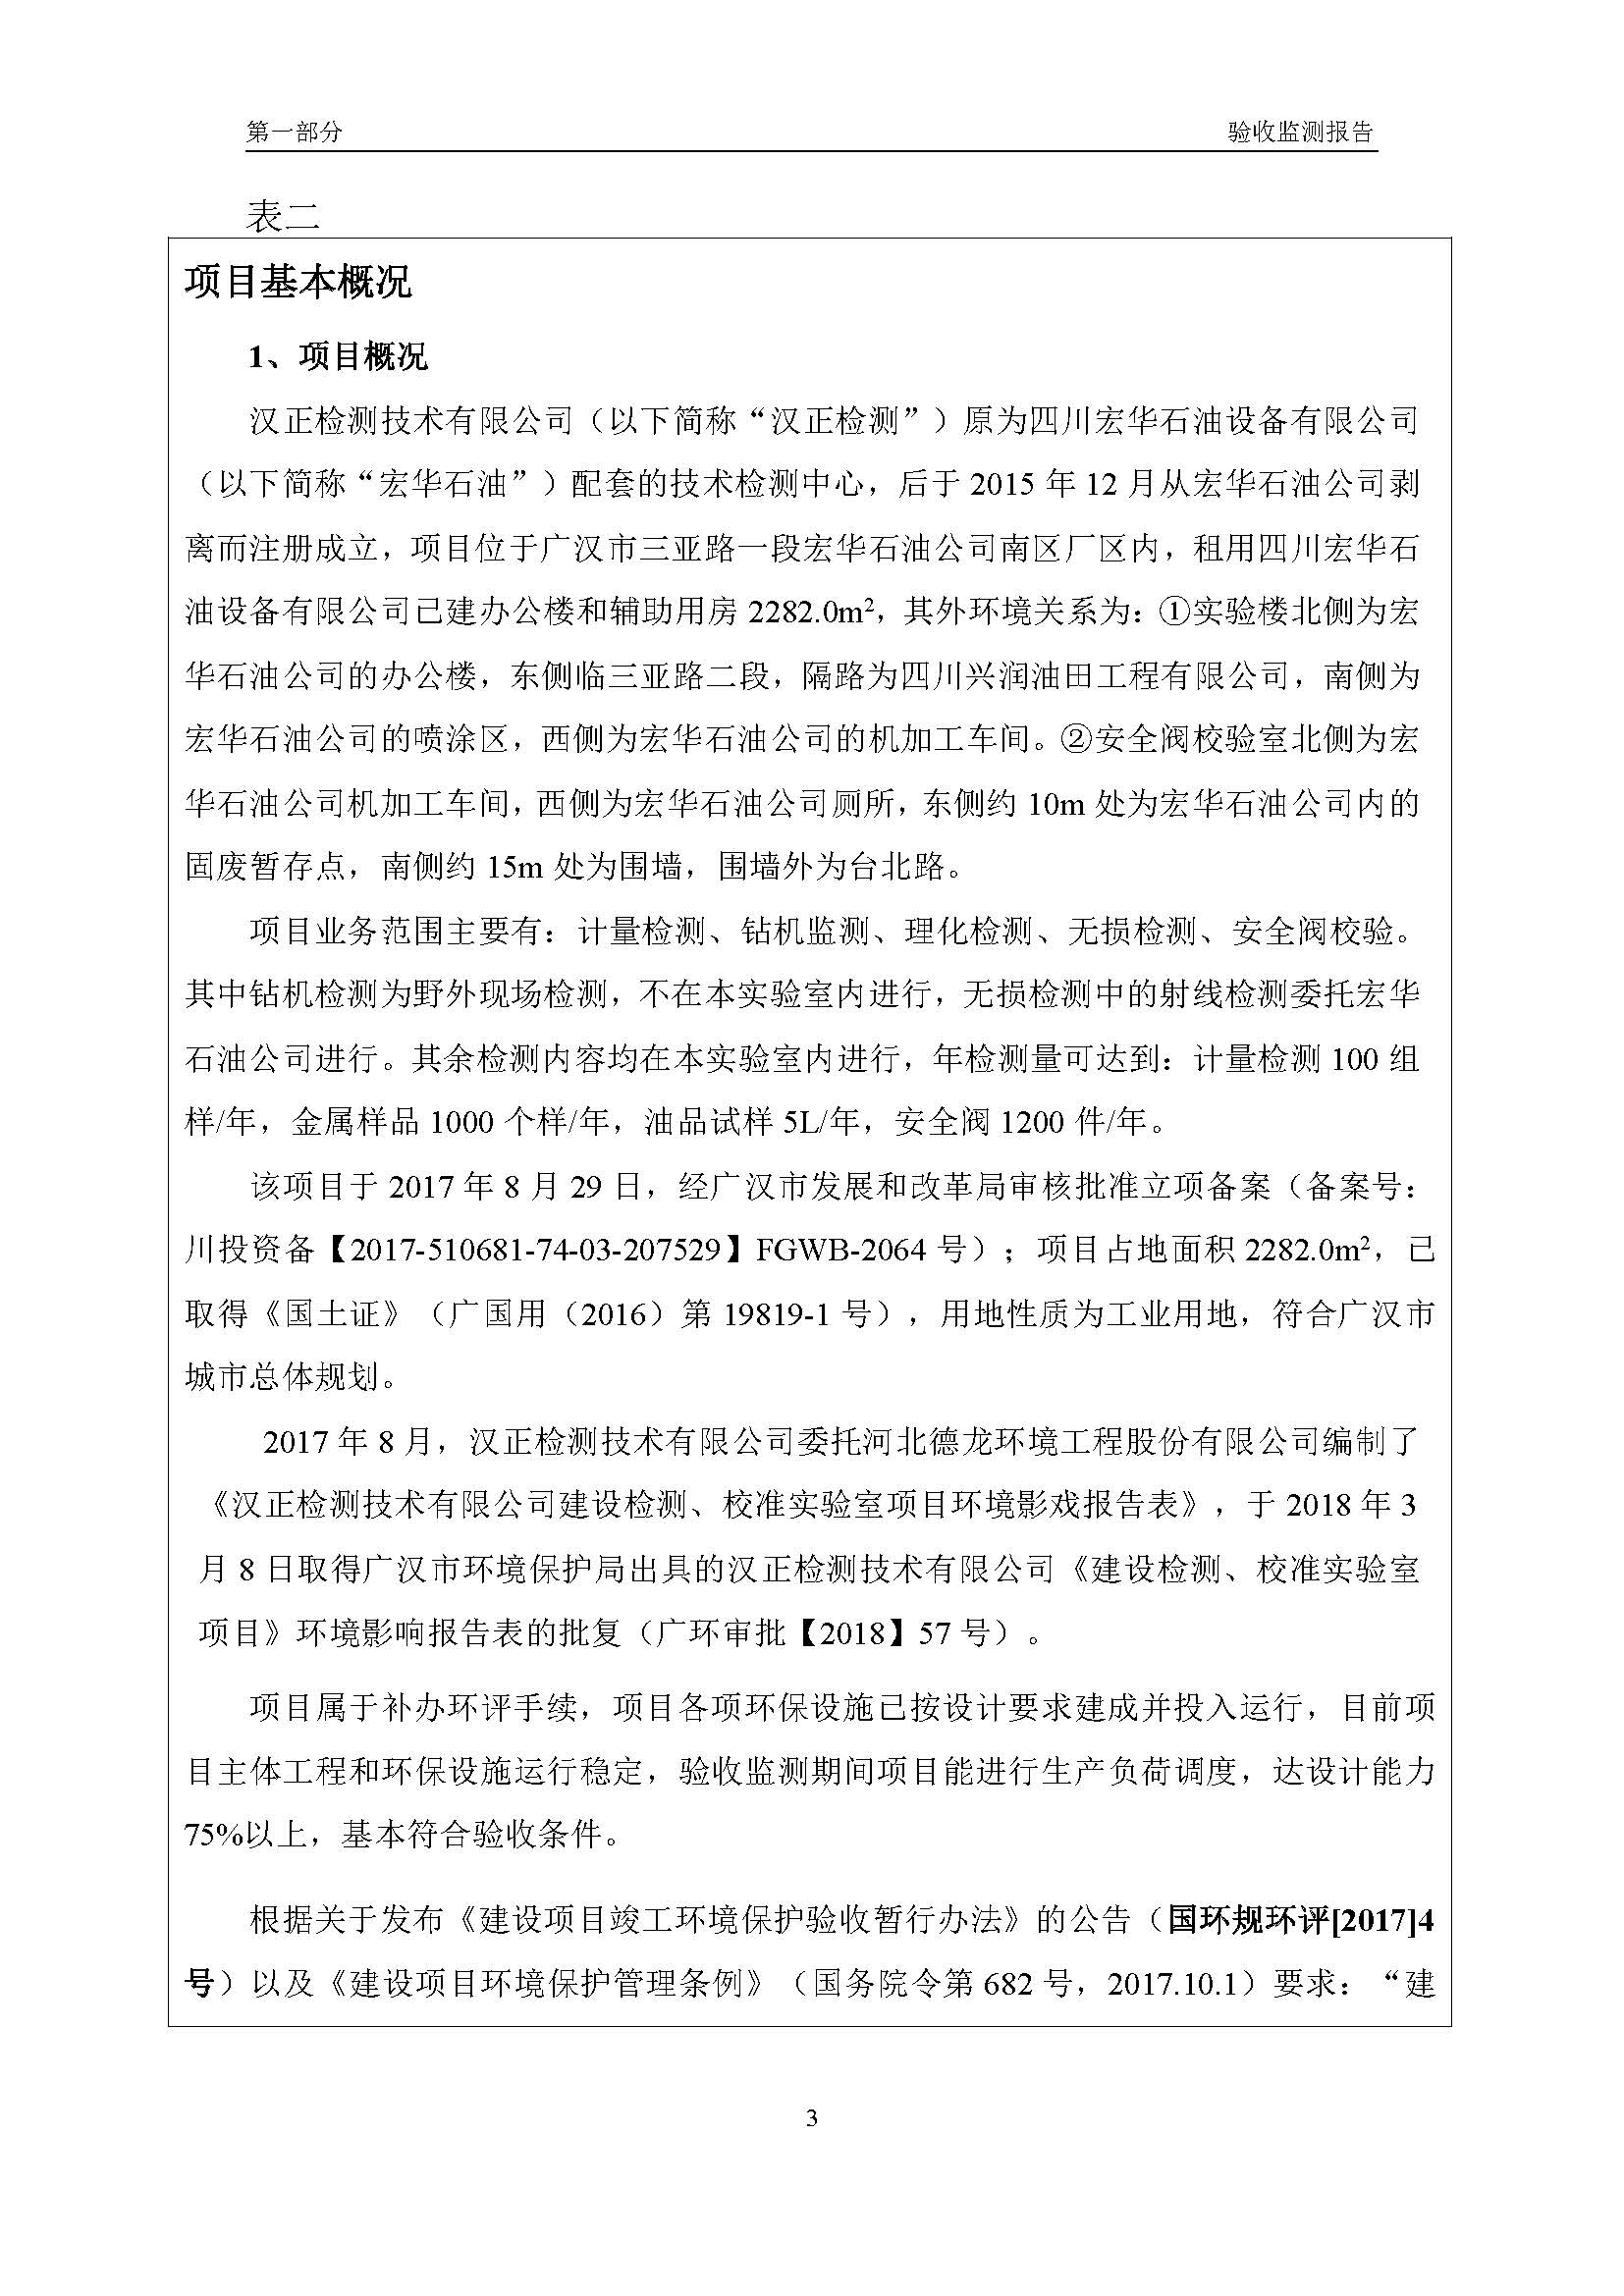 汉正检测环评验收报告 2018.05.31_页面_05.jpg